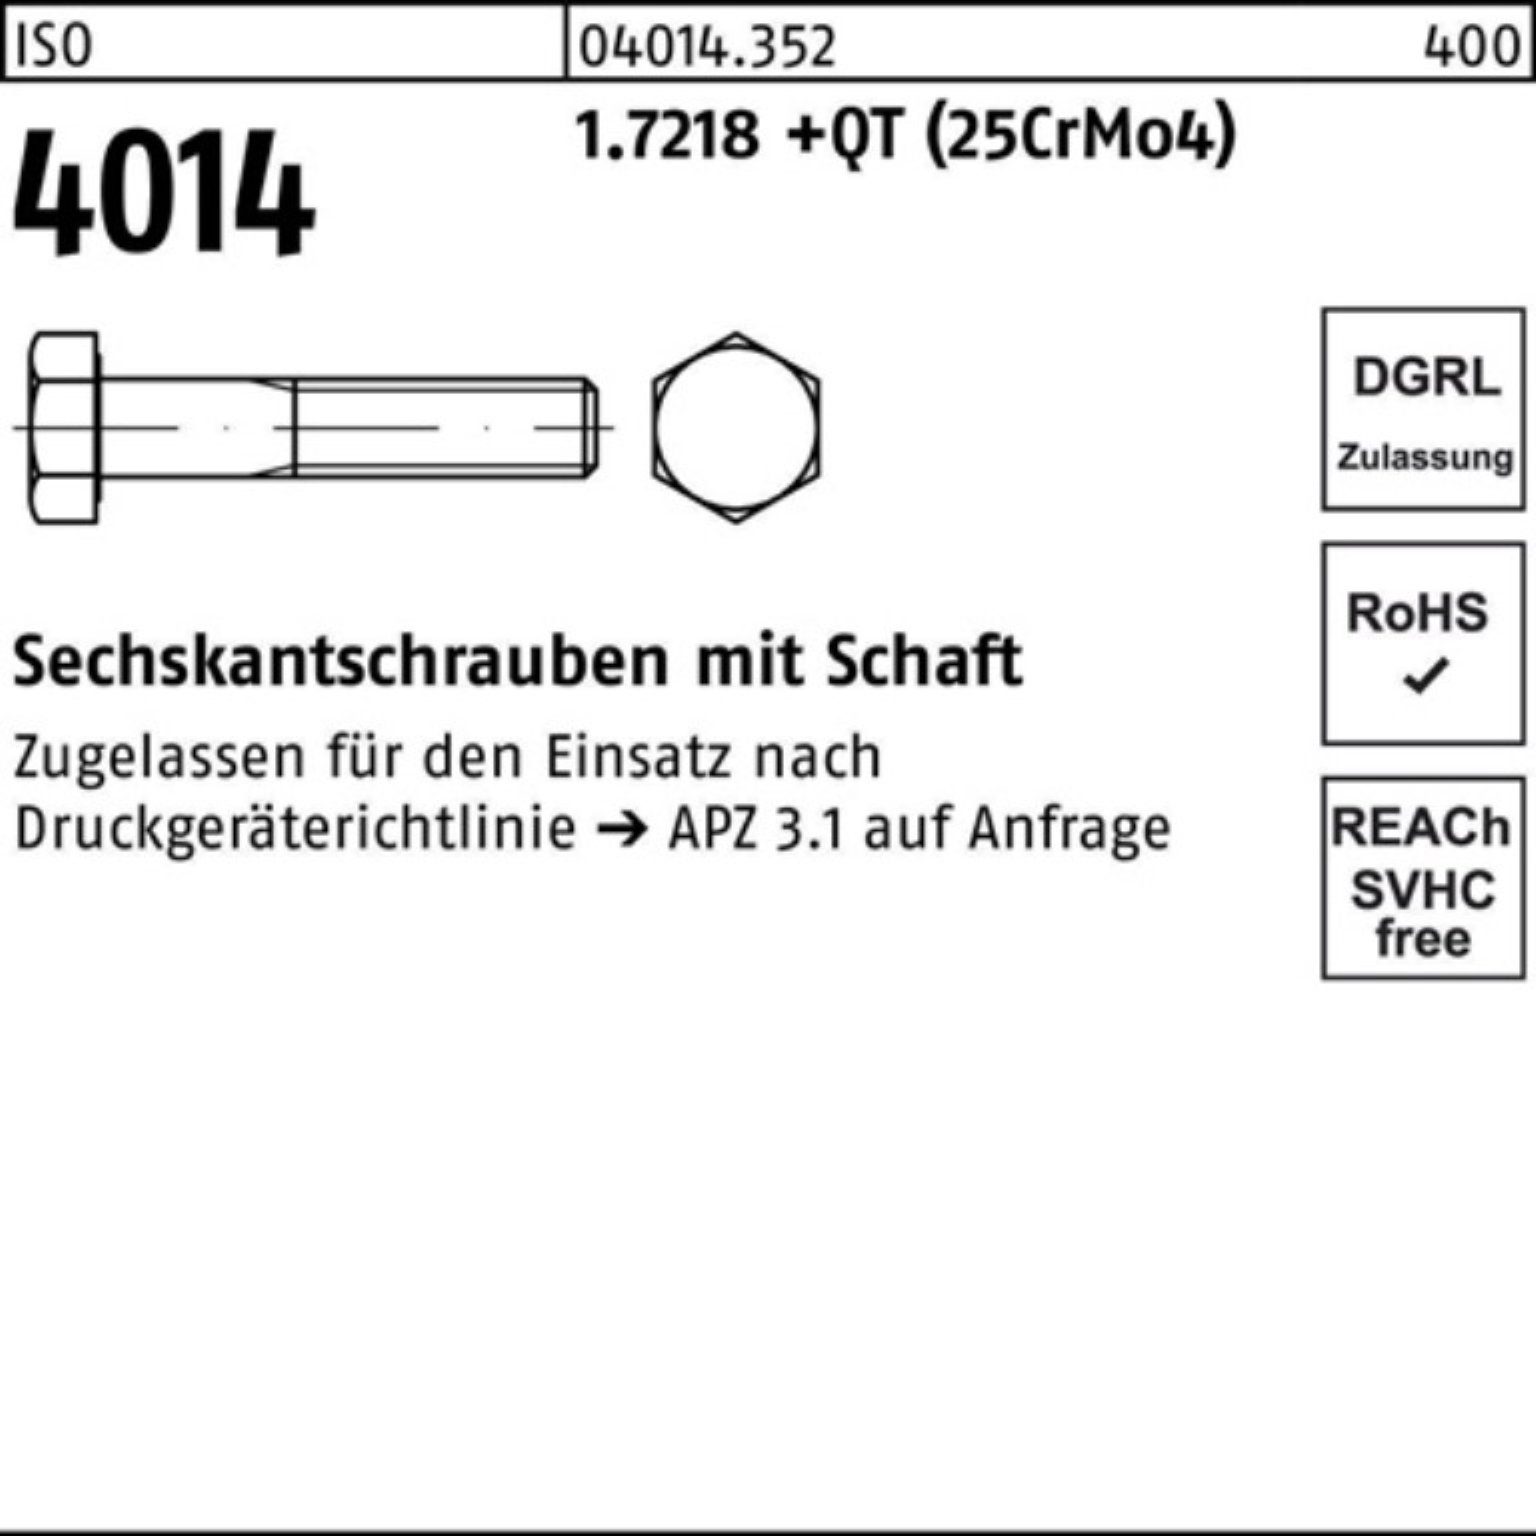 Bufab Sechskantschraube 100er 4014 M20x (25Cr 230 ISO Schaft +QT Sechskantschraube 1.7218 Pack